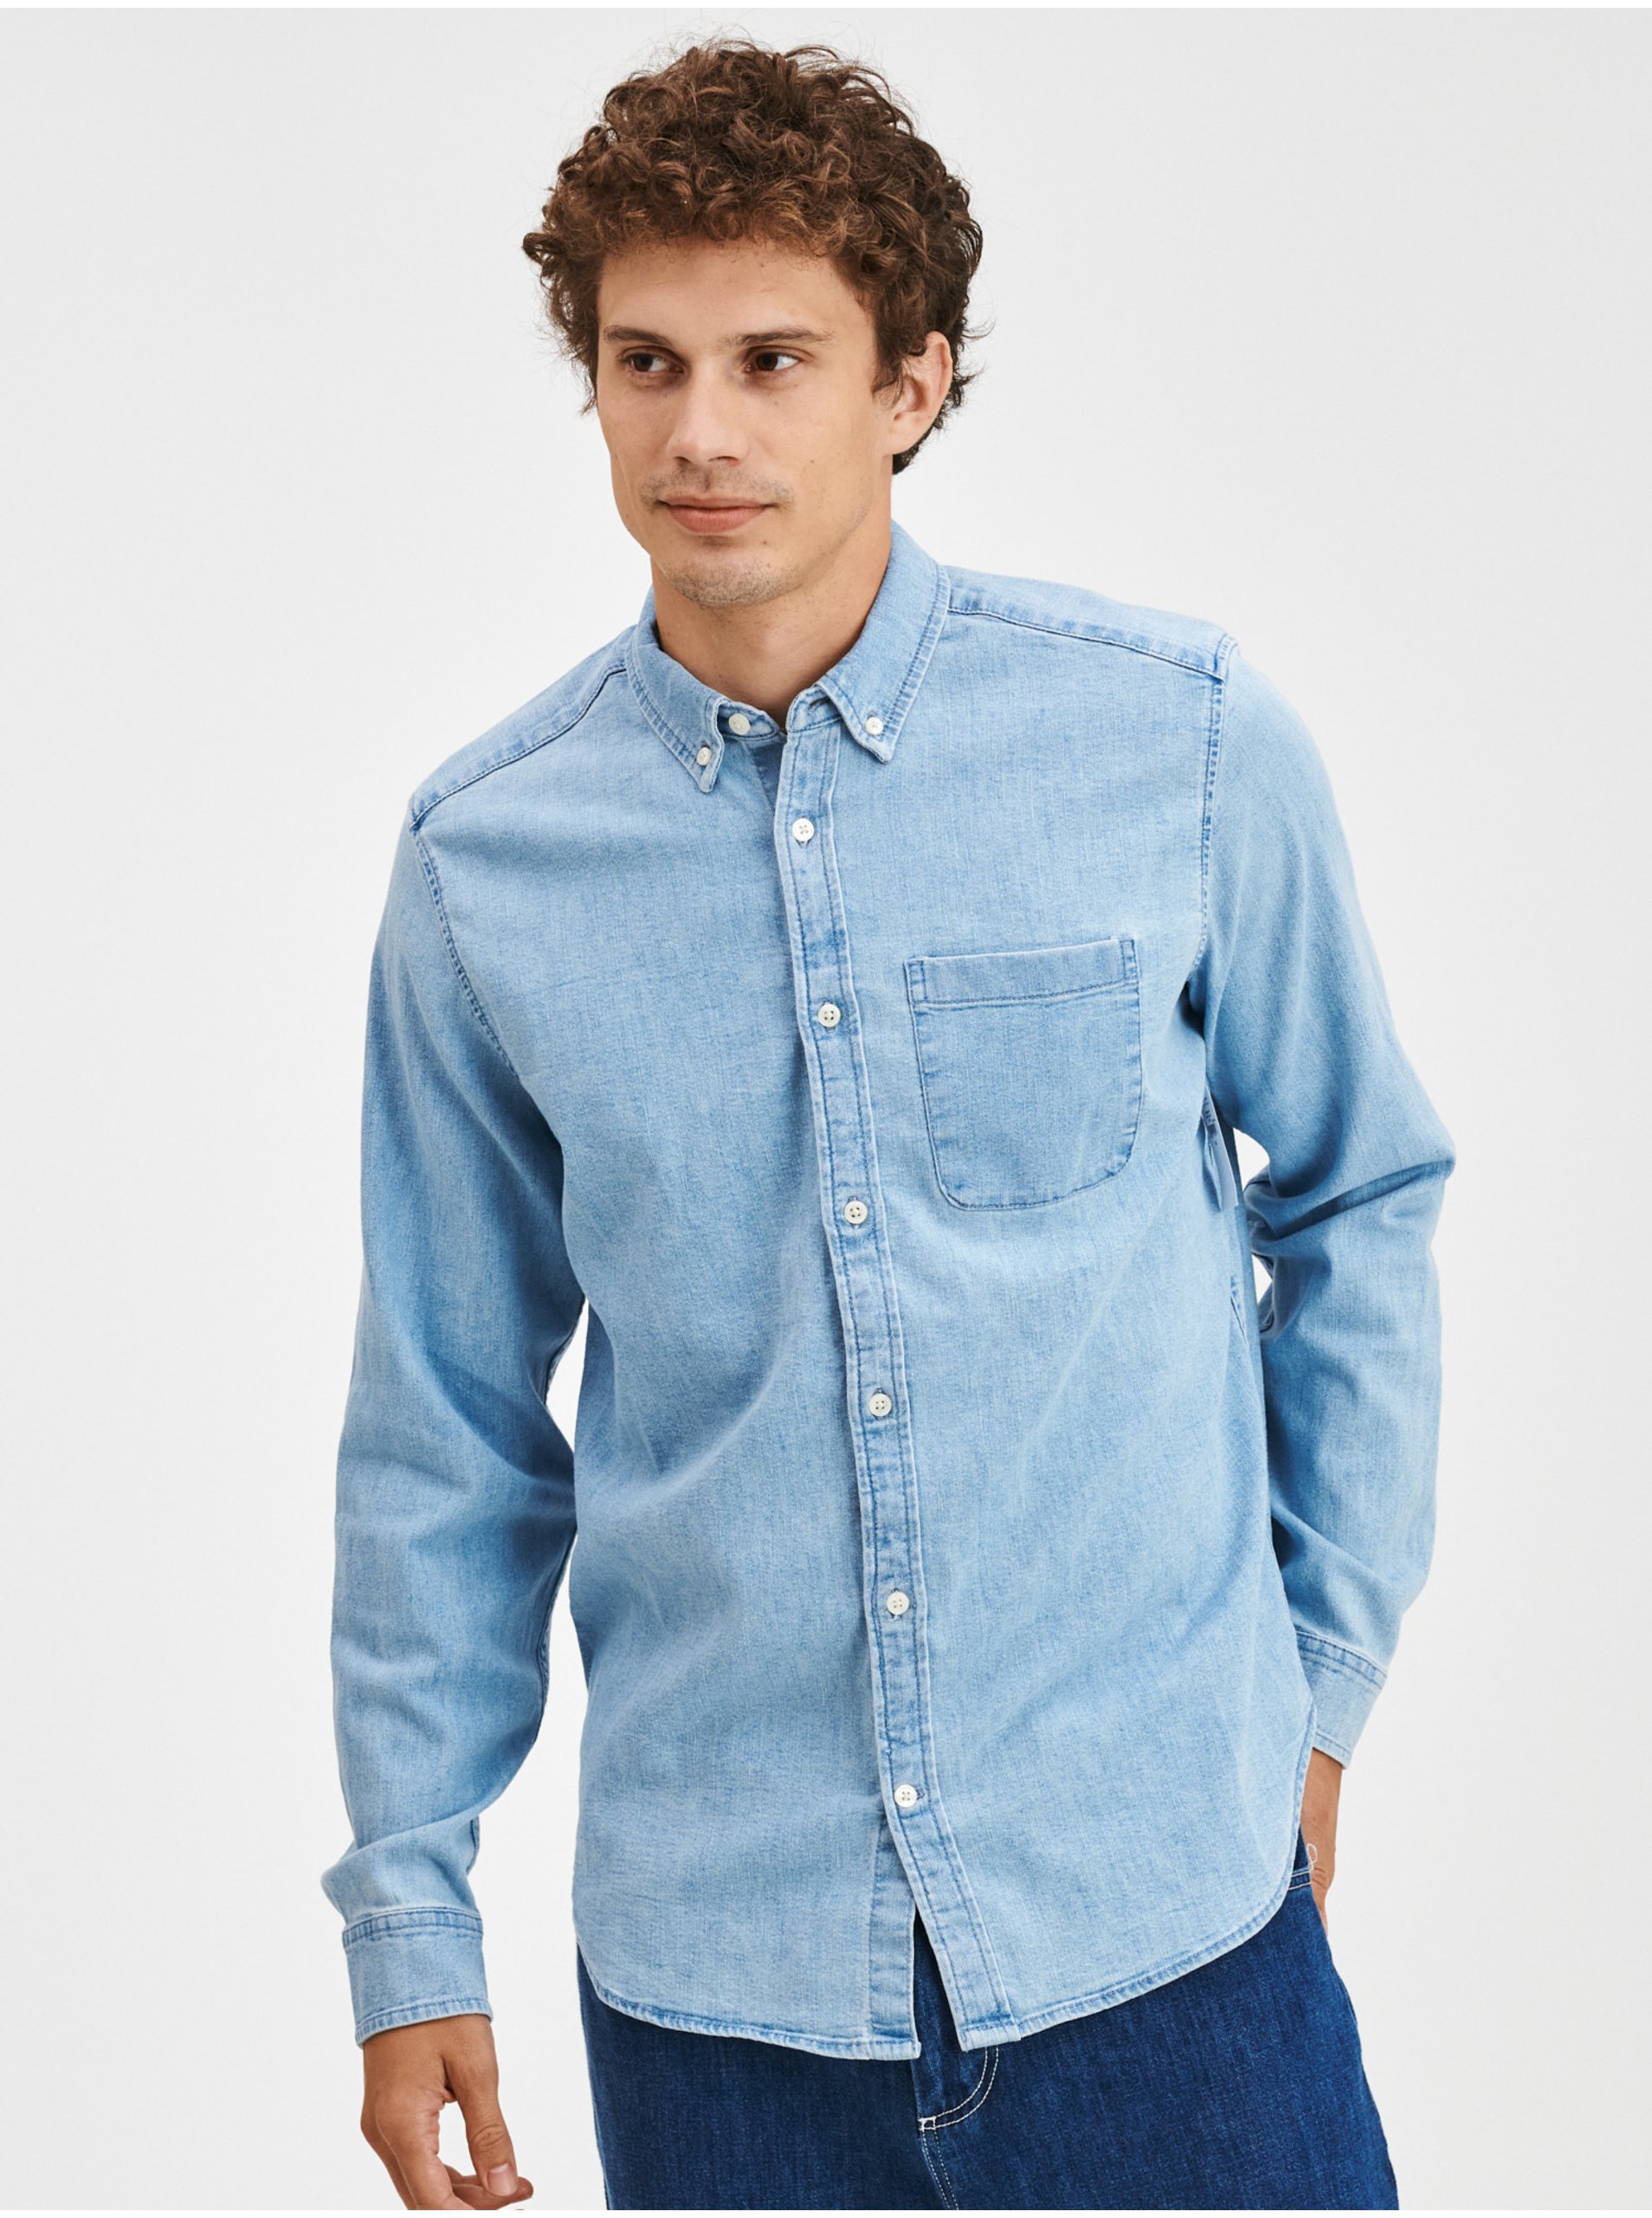 Lacno Modrá pánska rifľová košeľa denim shirt GAP